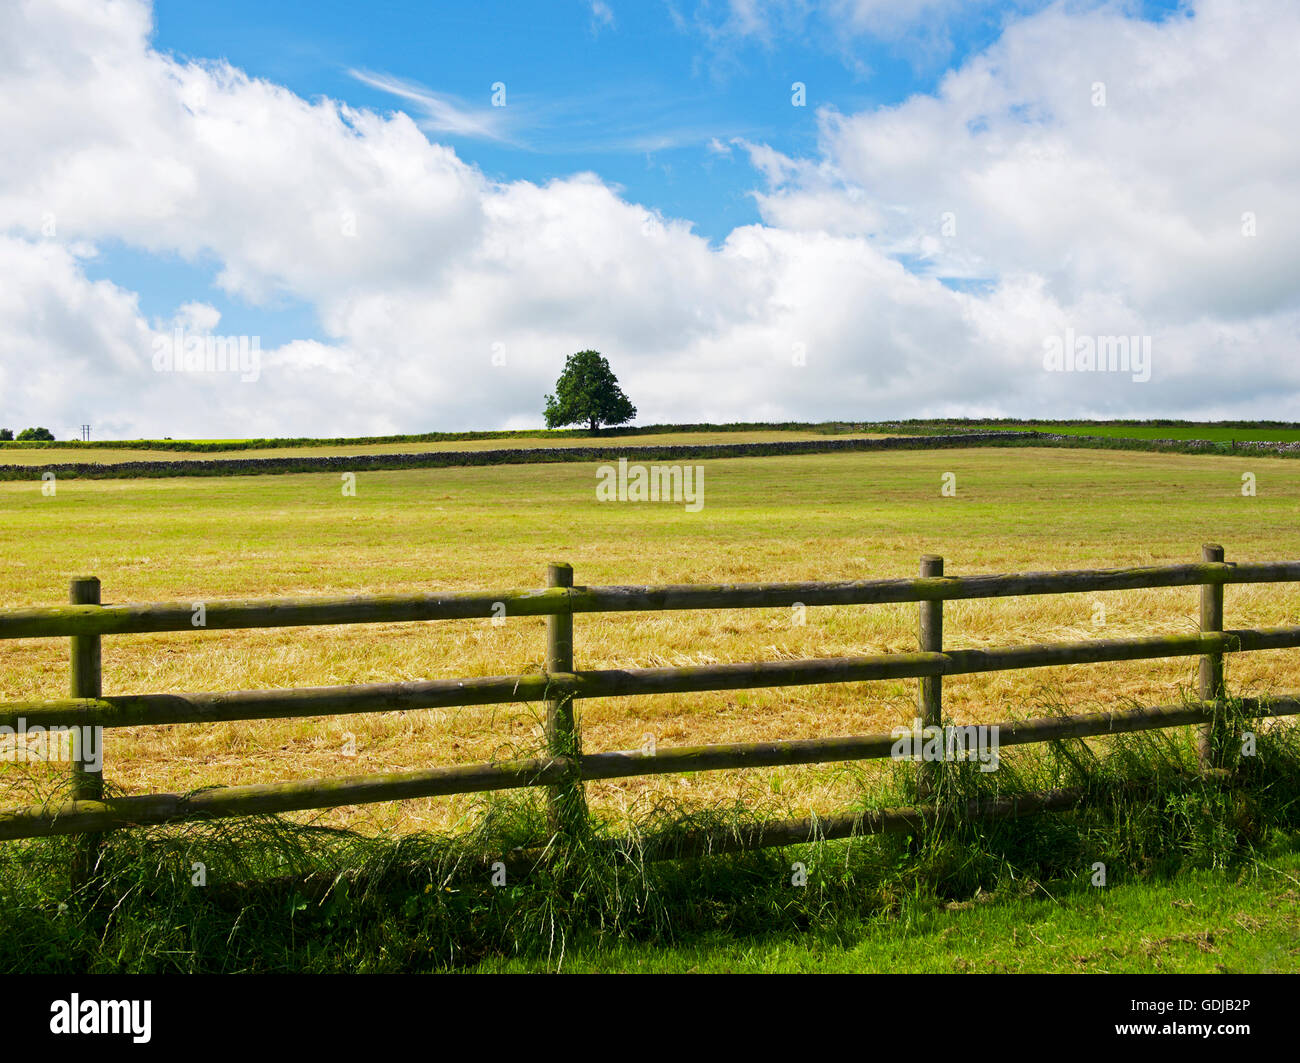 Arbre, champ et clôture, England UK Banque D'Images